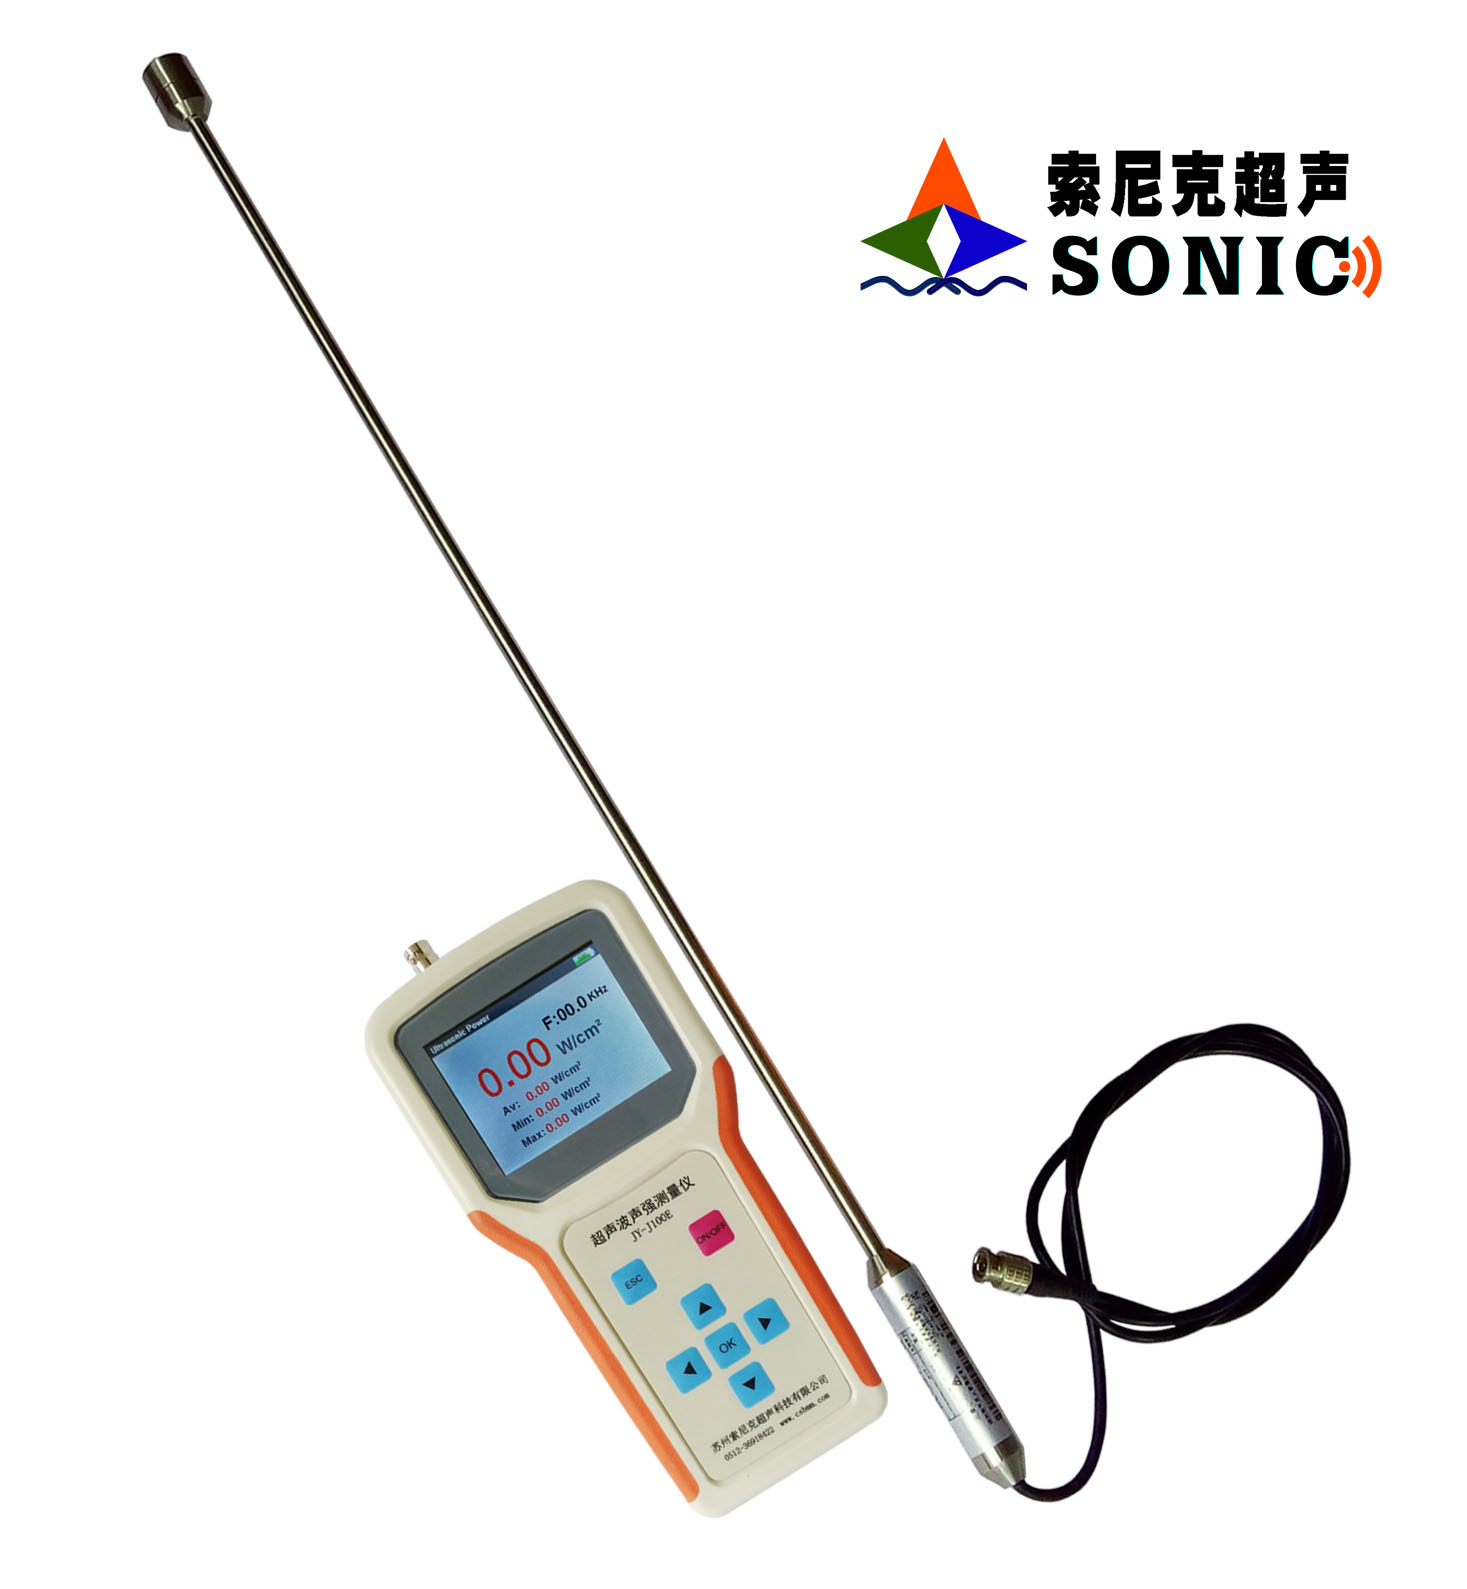 超声波声强测量仪JY-J100E规格,超声波声强测量仪报价 